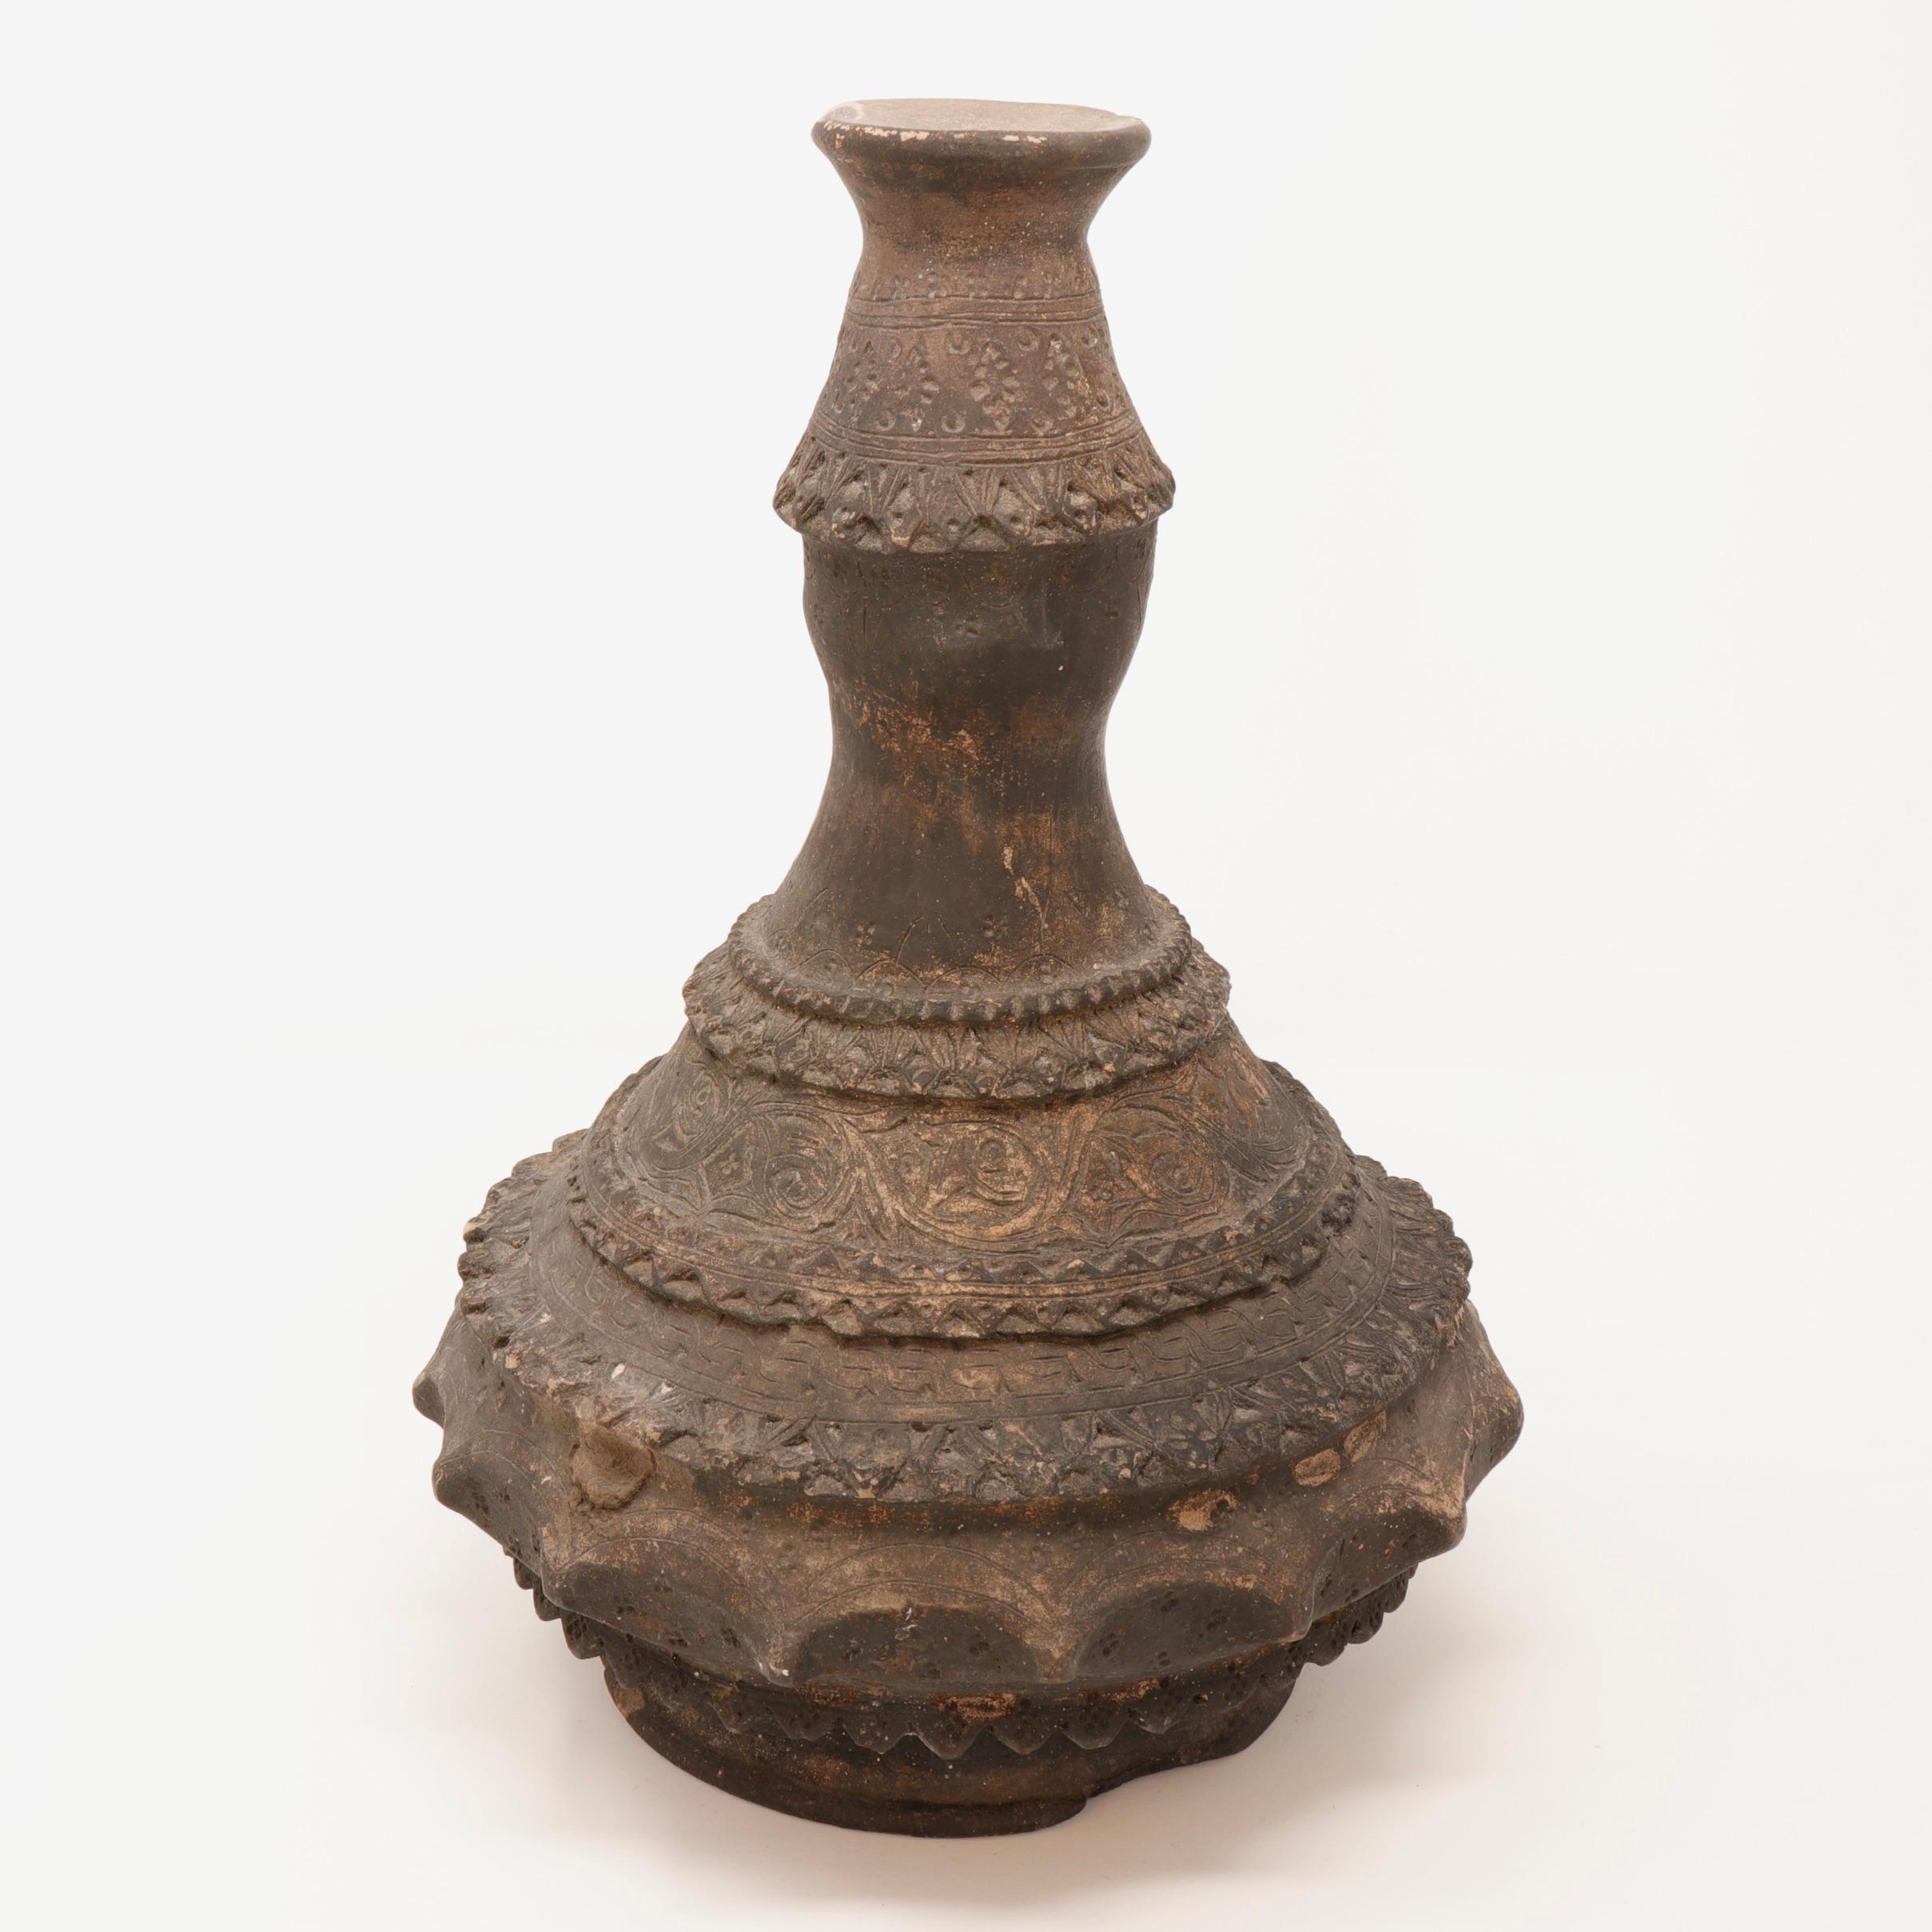 Deux récipients à eau en argile laïenne (Nam Ton), Beaker & Kendi, 19e siècle. Les formes en argile faiblement cuite, construites en serpentin, sont des corps globulaires trapus avec de hauts cols en forme de poignées. L'un d'eux est un grand